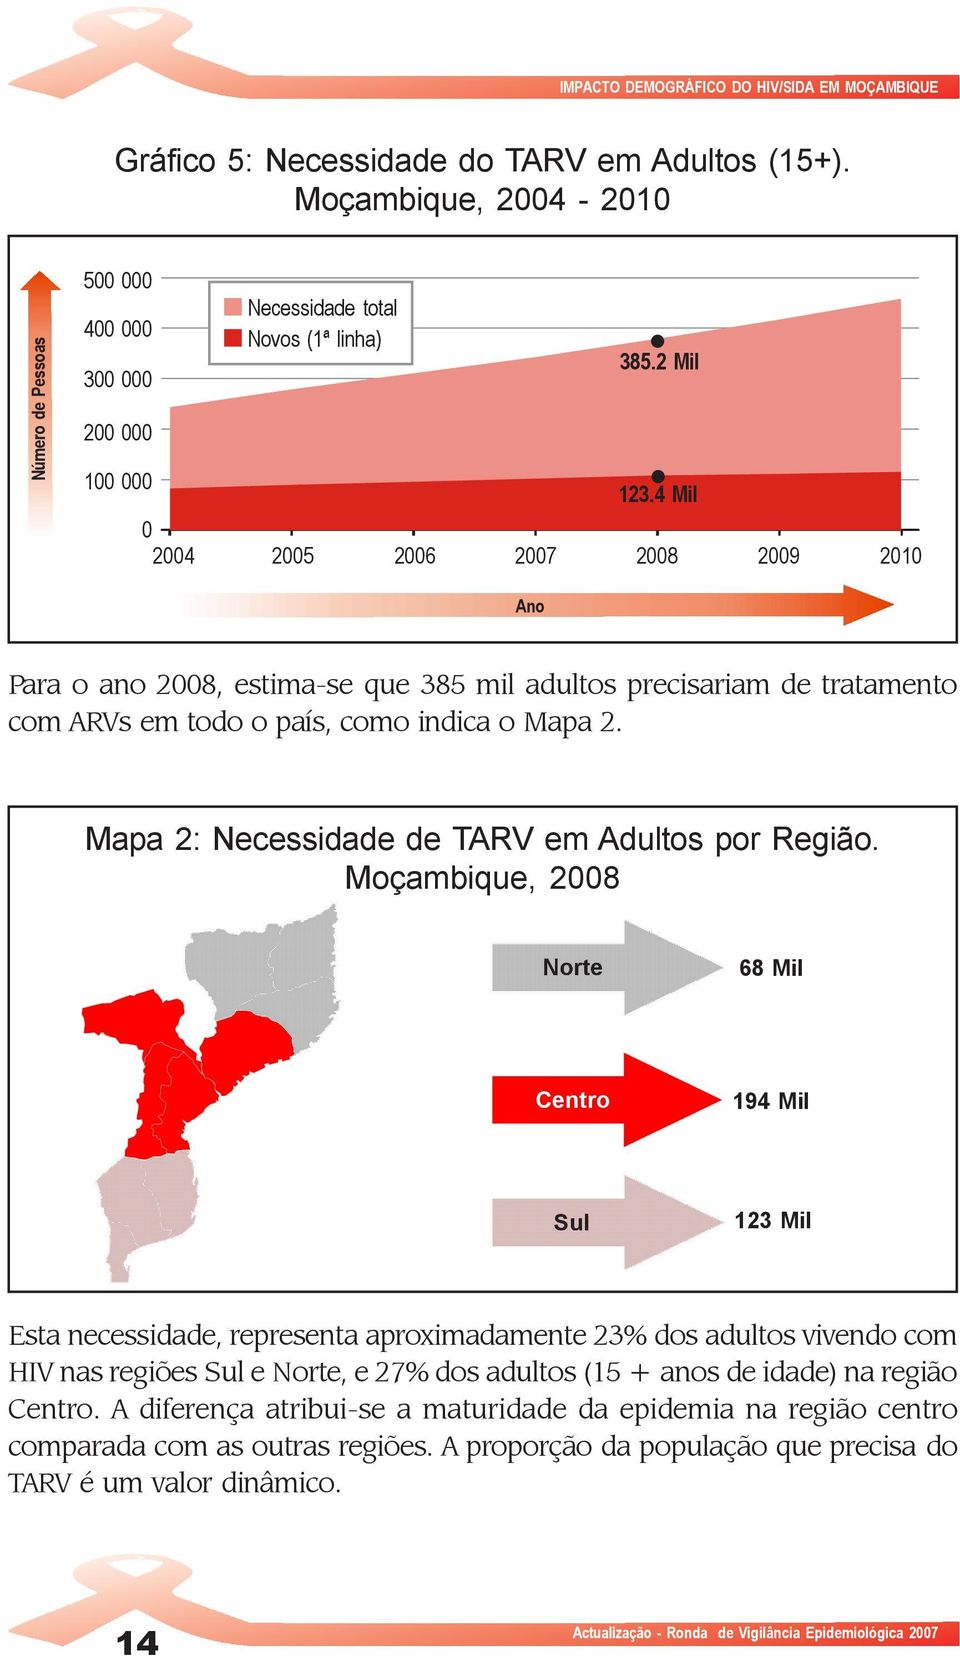 4 Mil 0 2004 2005 2006 2007 2008 2009 2010 Ano Para o ano 2008, estima-se que 385 mil adultos precisariam de tratamento com ARVs em todo o país, como indica o Mapa 2.